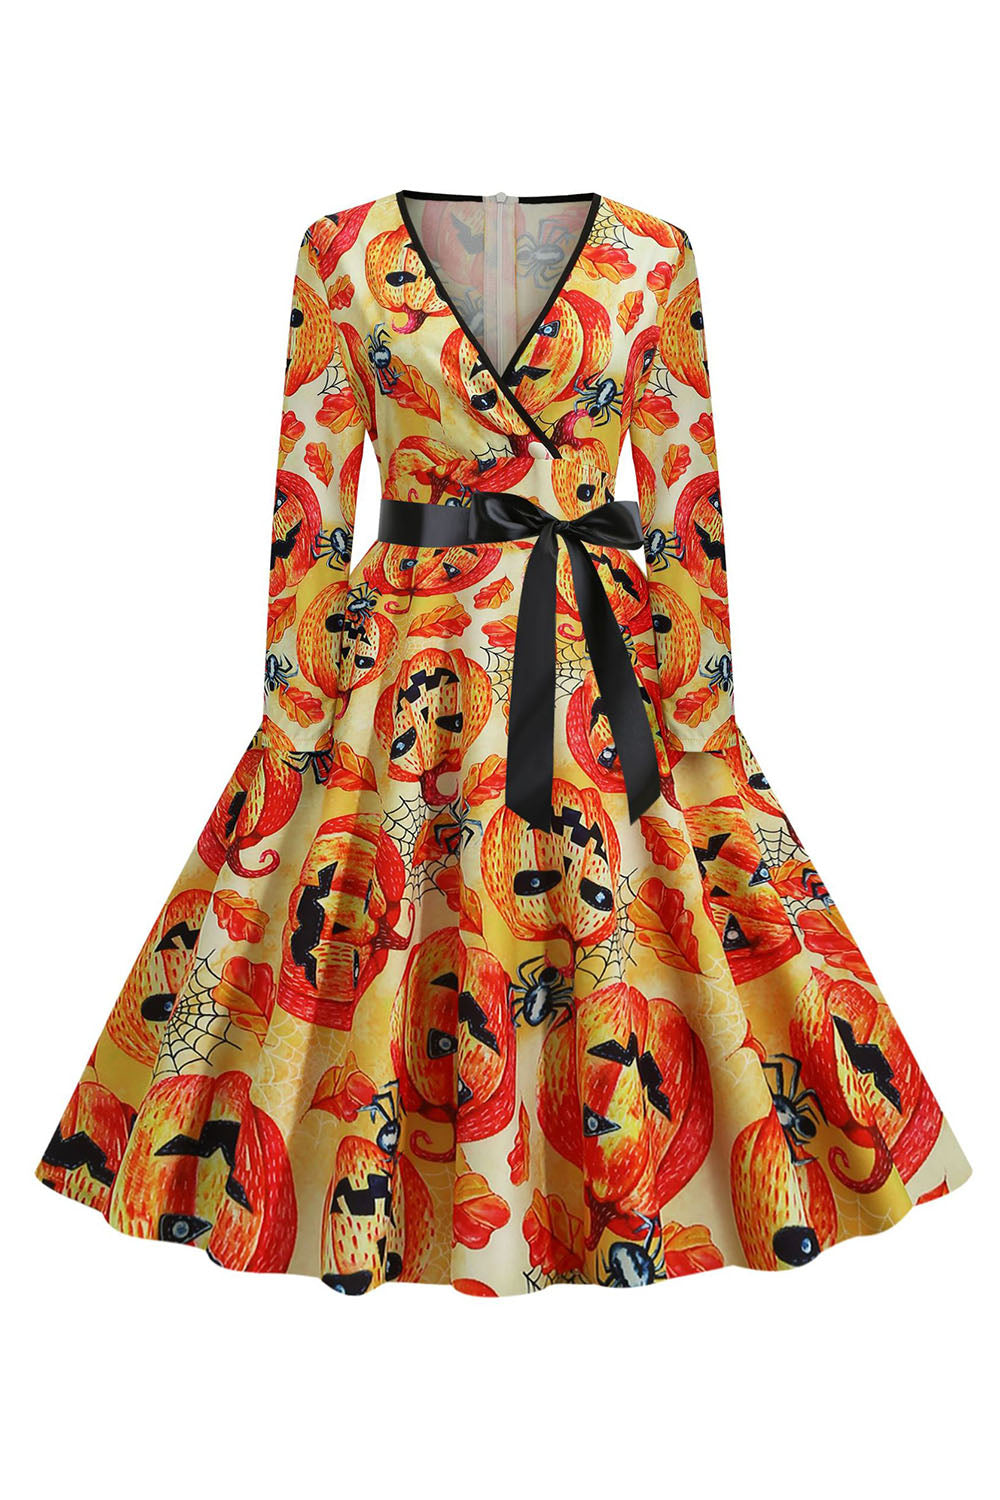 Orange Latern Printed Halloween Vintage 1950s Dress with Sleeves